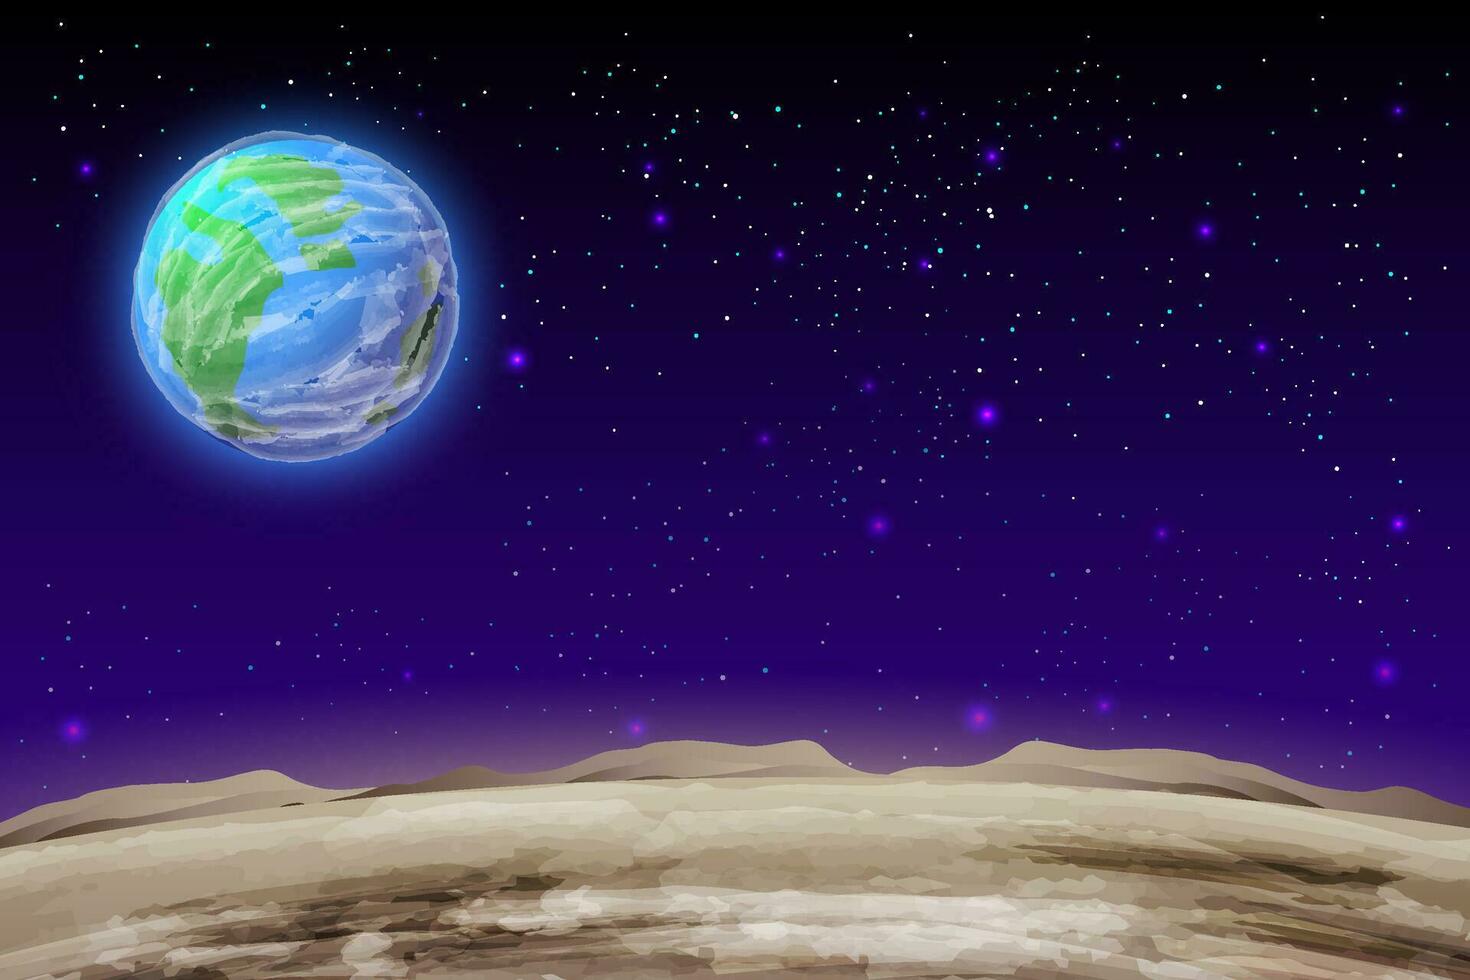 Planeten im Raum mit Meteor Satelliten und Asteroiden im dunkel sternenklar Himmel, Erde, Galaxis, Kosmos, Universum, futuristisch Fantasie Aussicht Hintergrund zum Computer Spiel. Karikatur Vektor Illustration